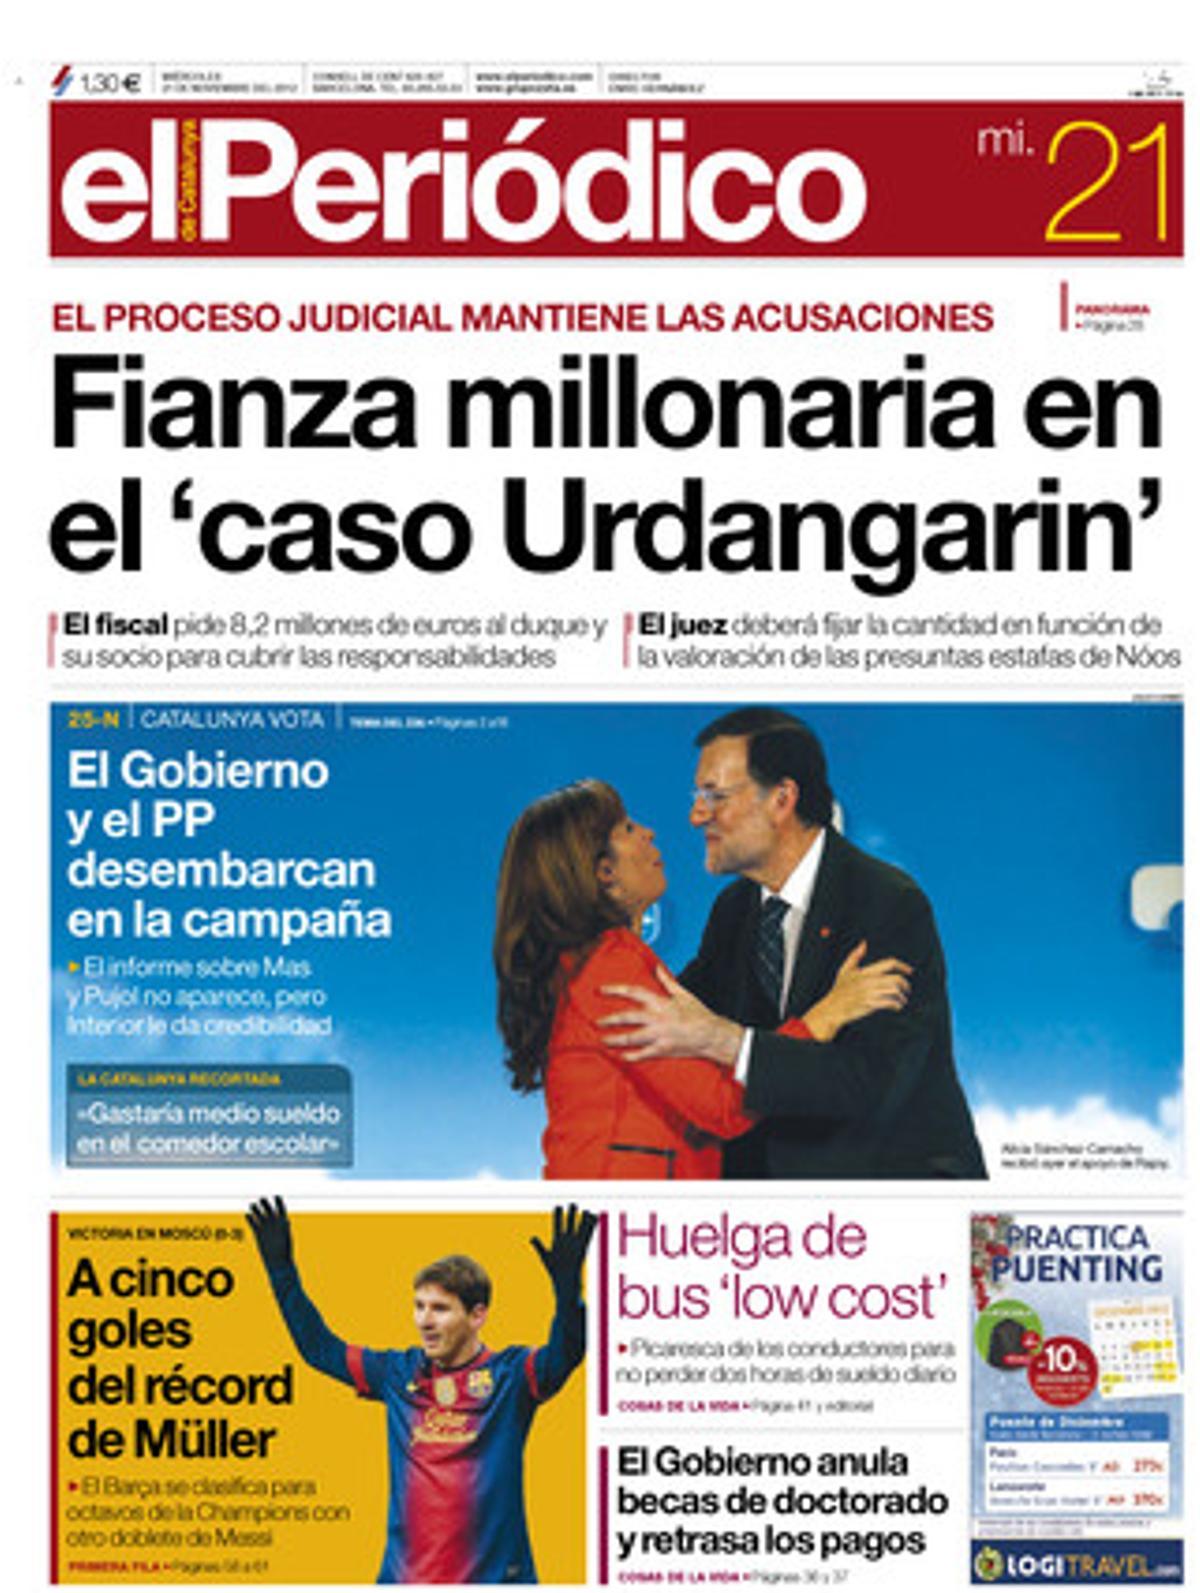 Finanza millonaria en el ’caso Urdangarin’. Portada publicada el 21 de noviembre del 2012.